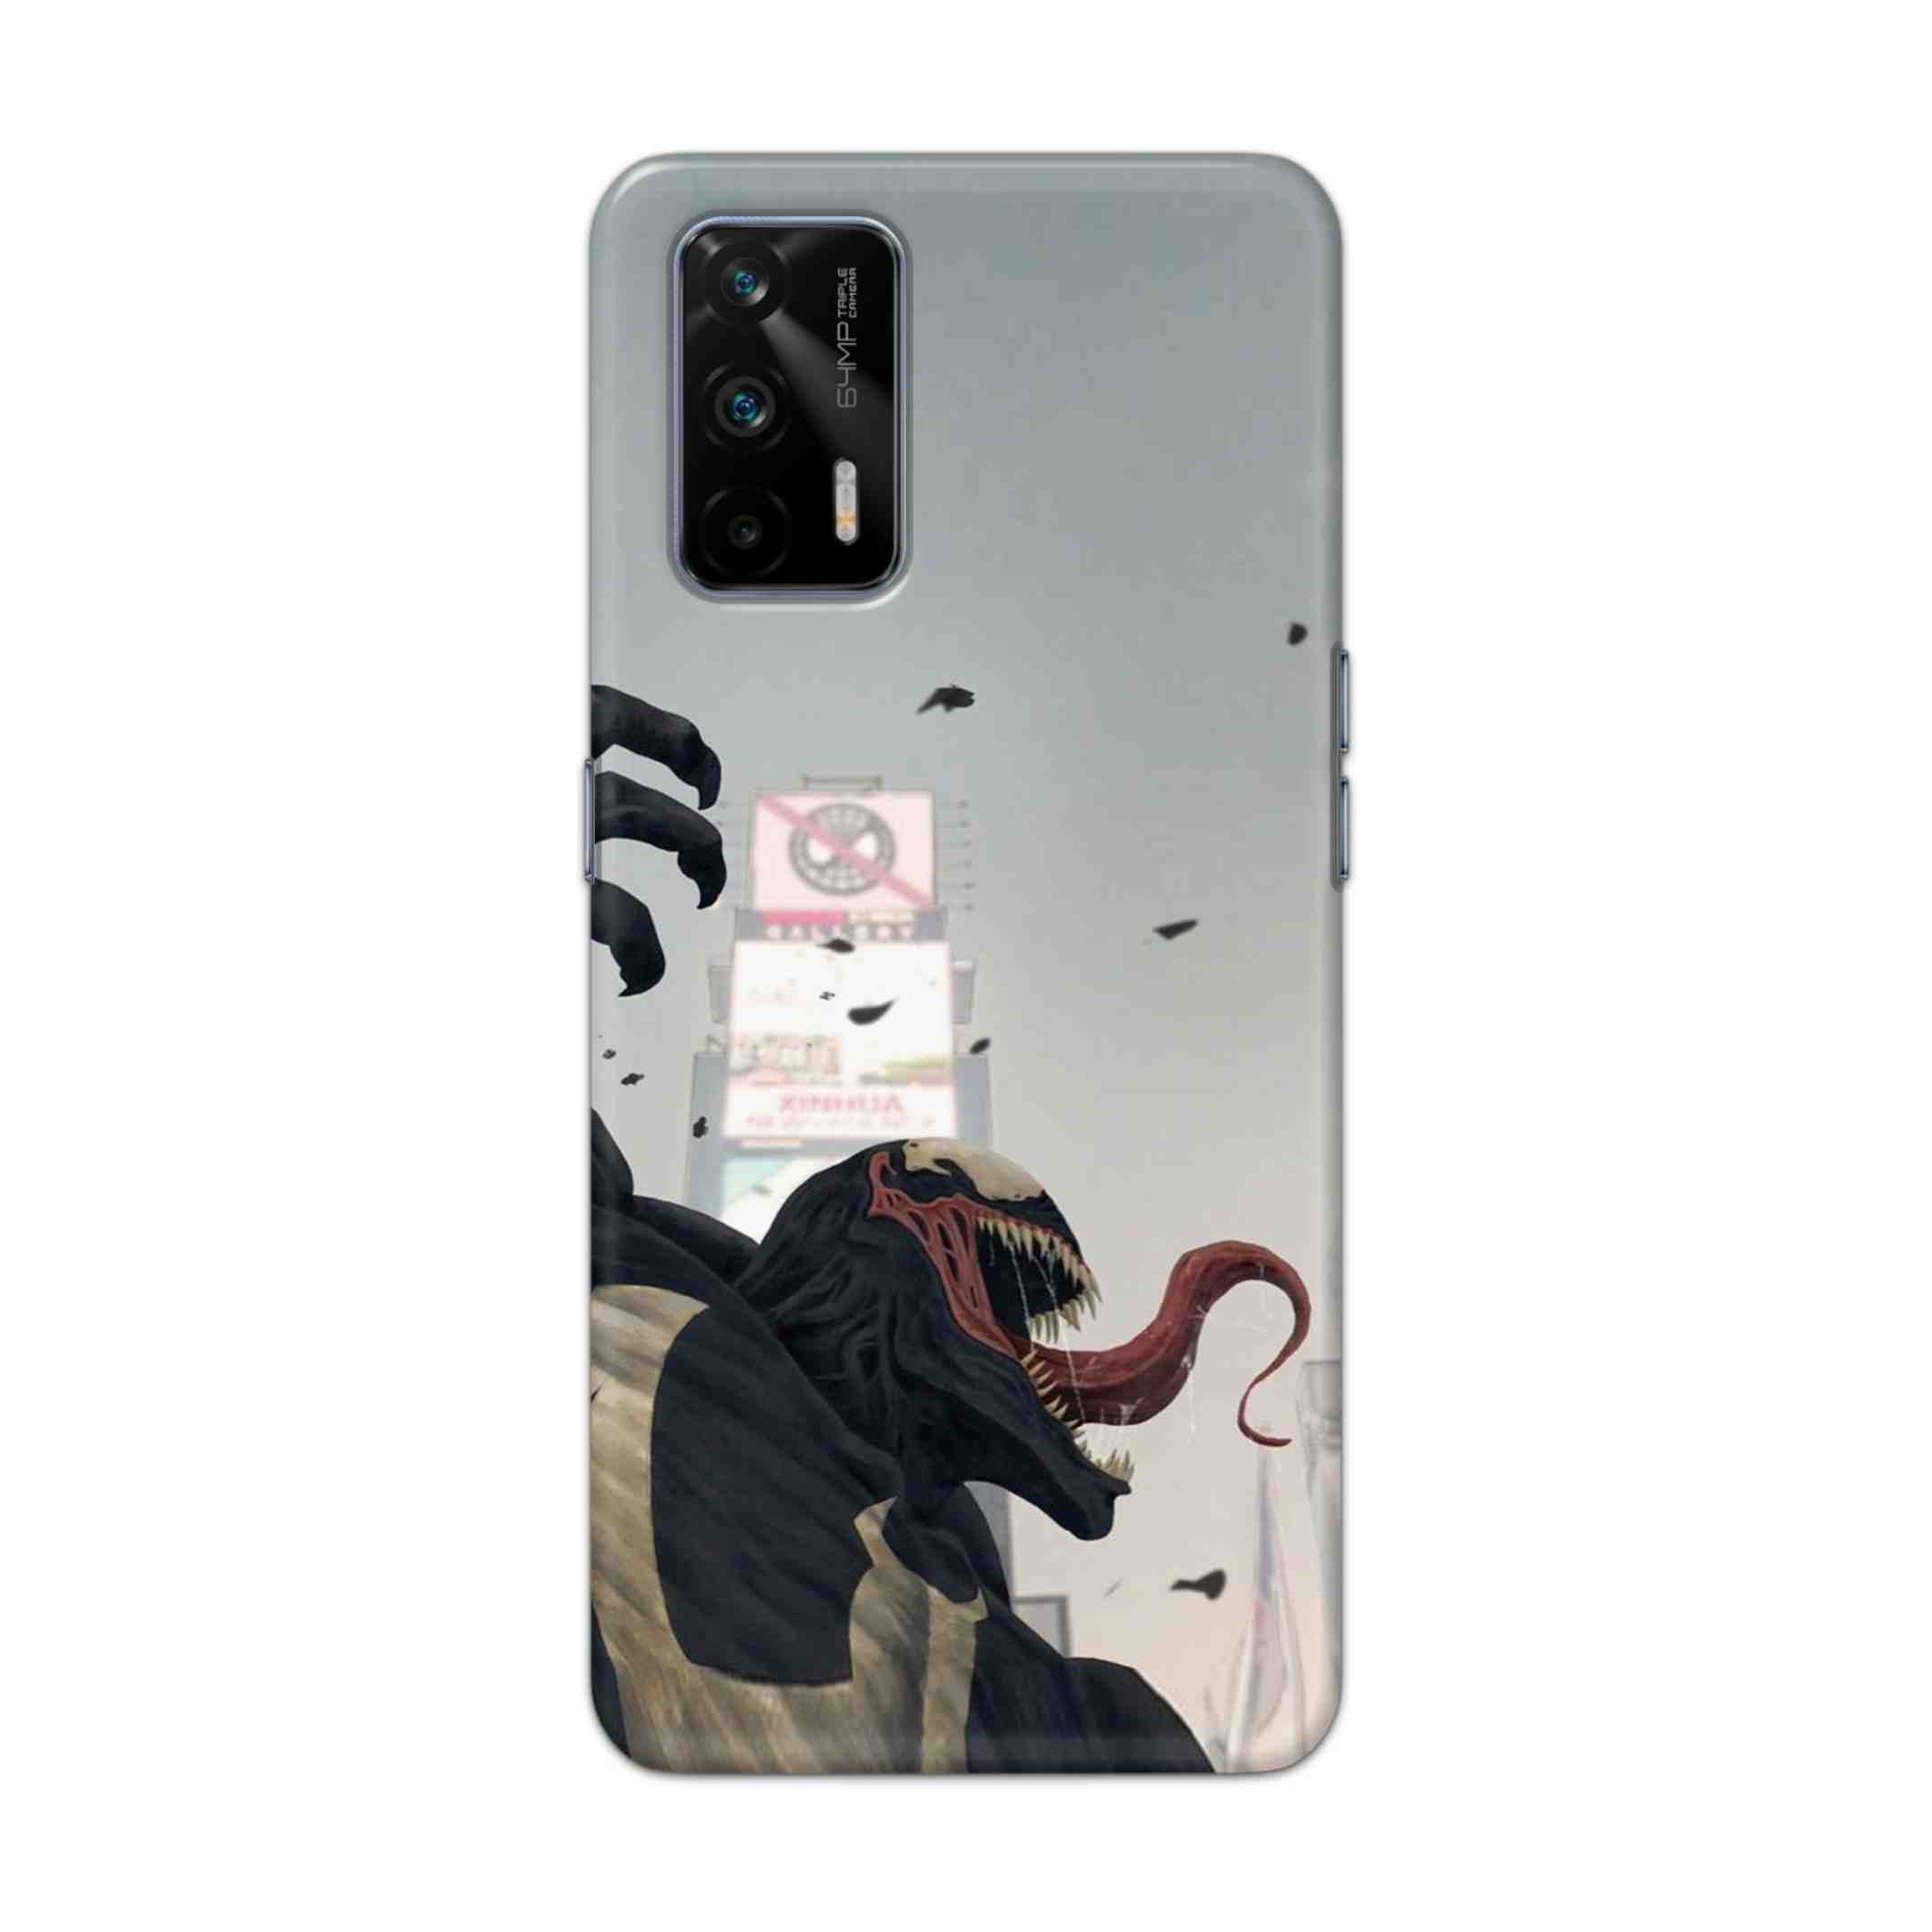 Buy Venom Crunch Hard Back Mobile Phone Case Cover For Realme GT 5G Online